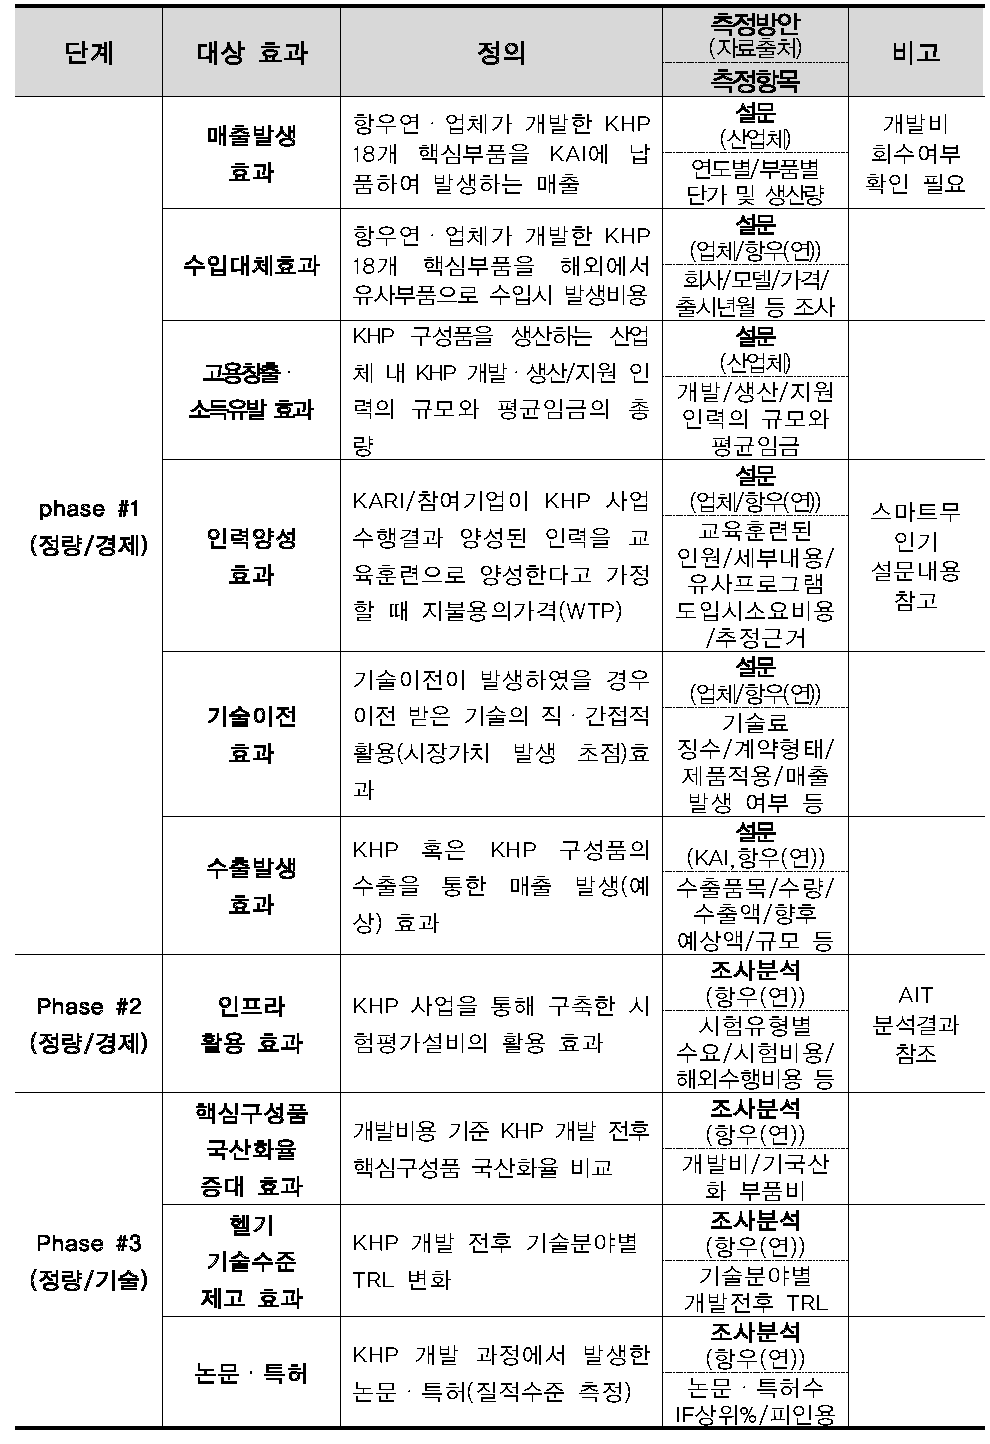 한국형헬기 민군겸용 핵심구성품 개발사업 편익 발굴 결과Ⅰ (정량적 효과)